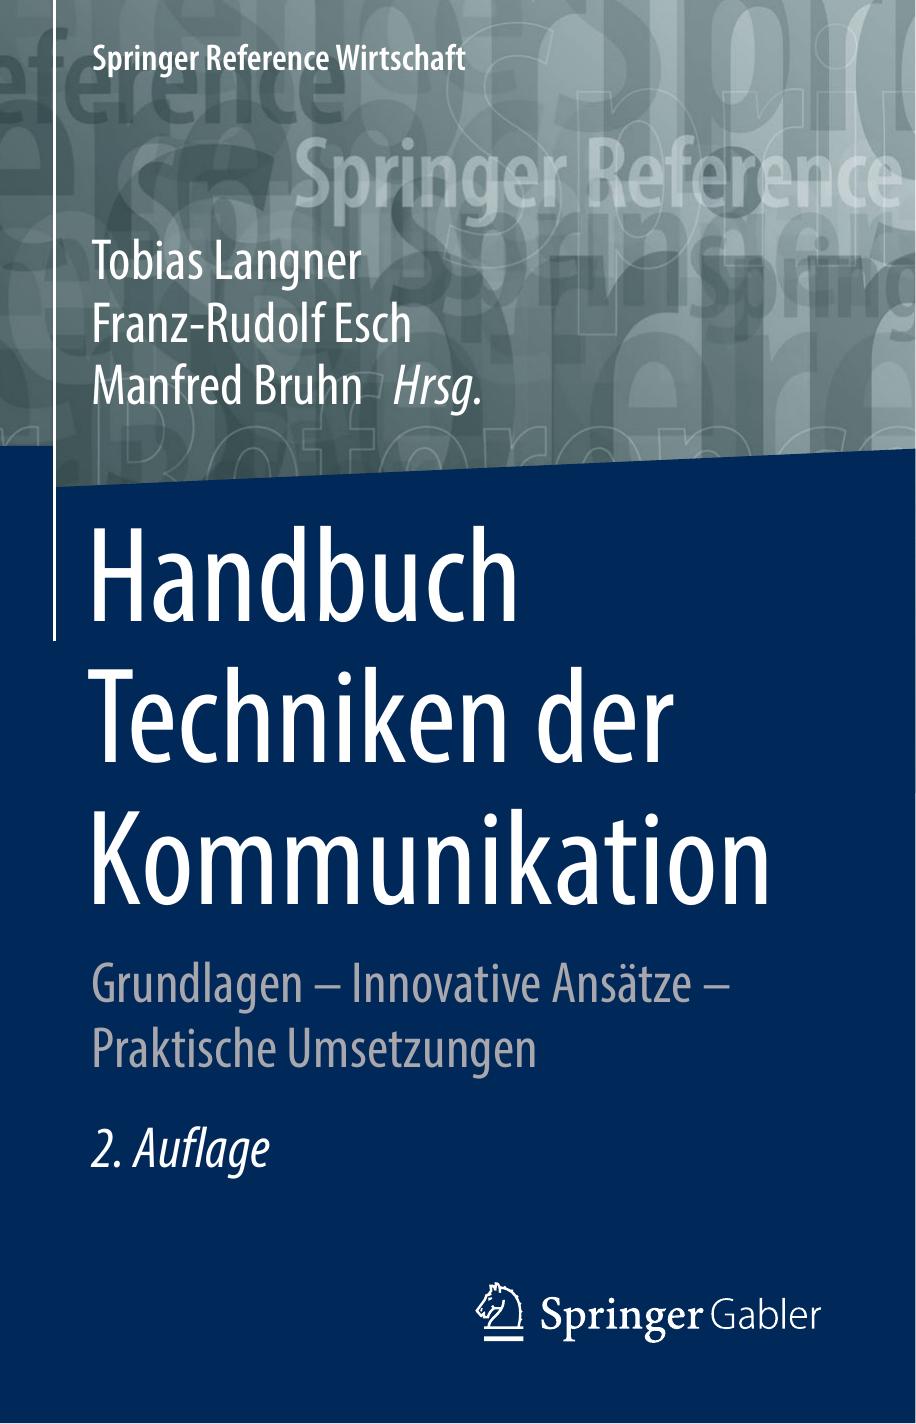 Handbuch Sozialtechniken der Kommunikation: Grundlagen - Innovative Ansätze - Praktische Umsetzungen